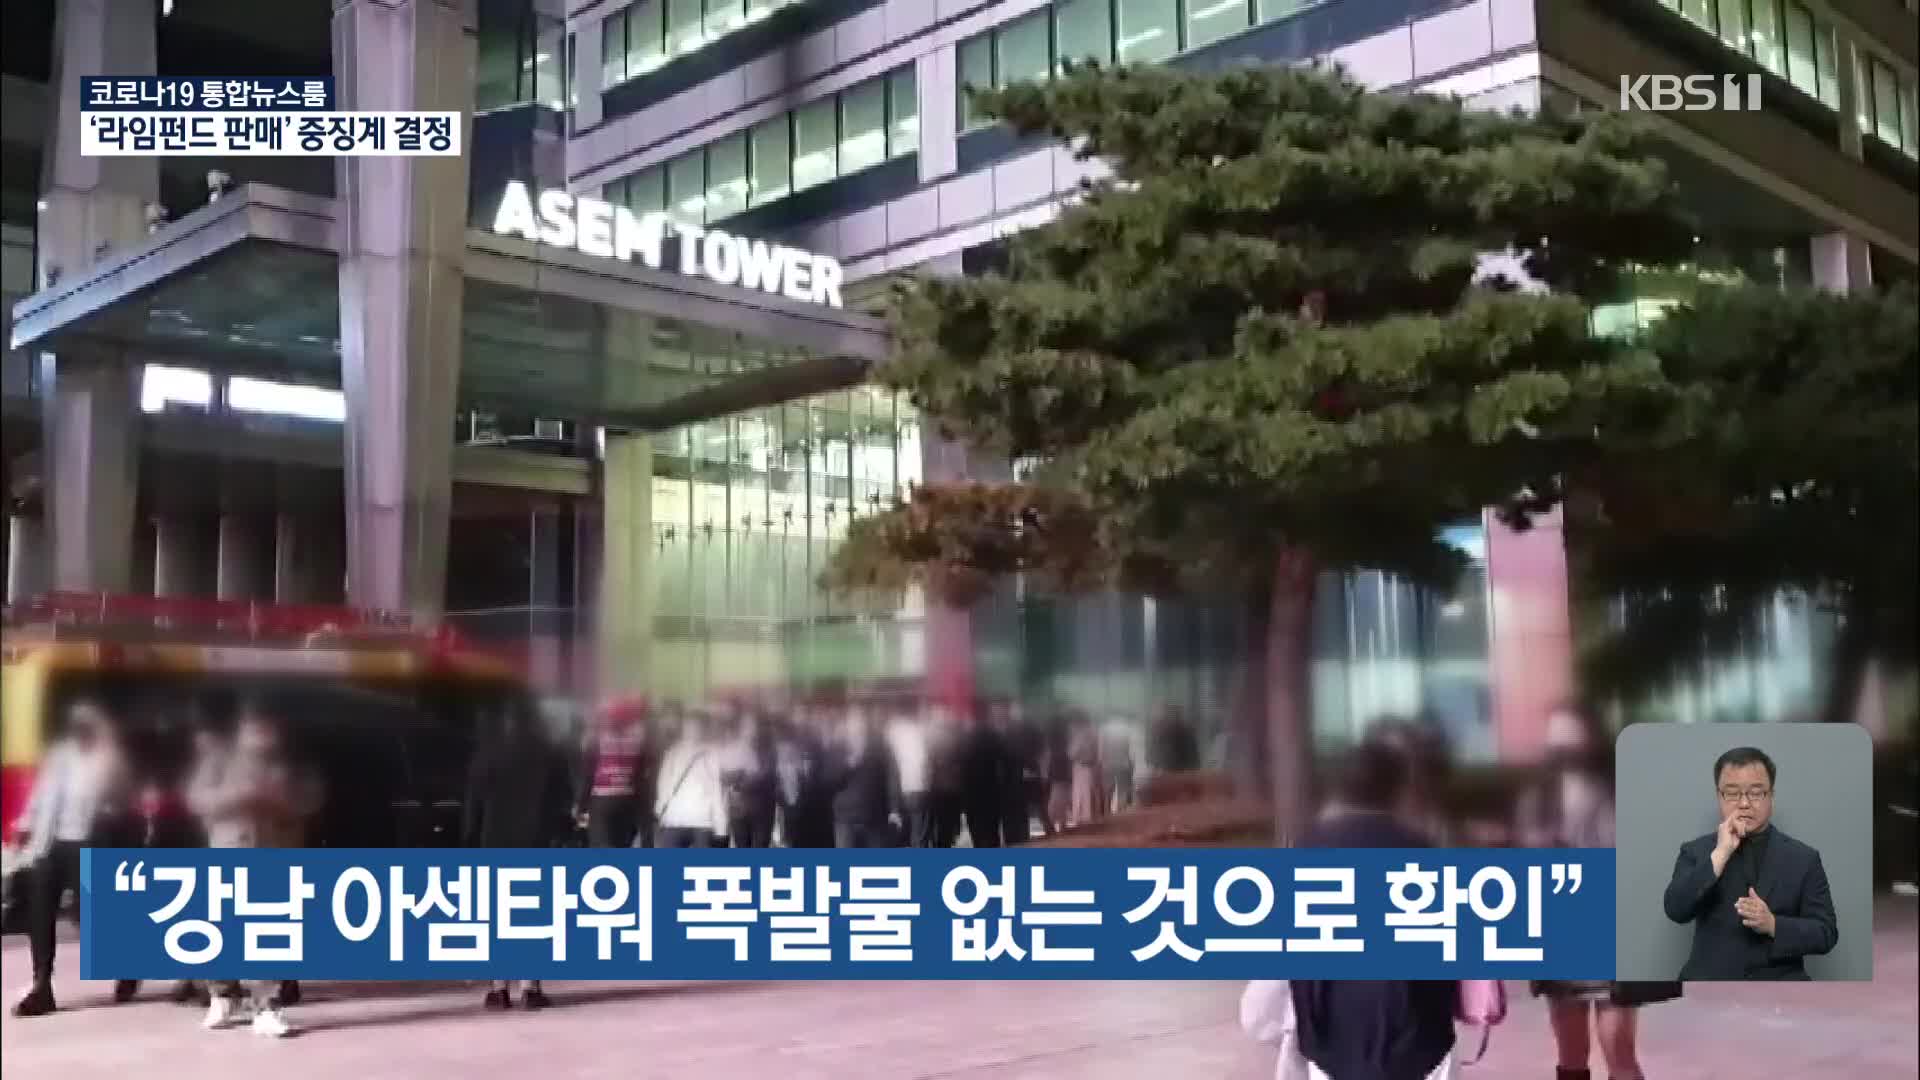 “강남 아셈타워 폭발물 없는 것으로 확인”